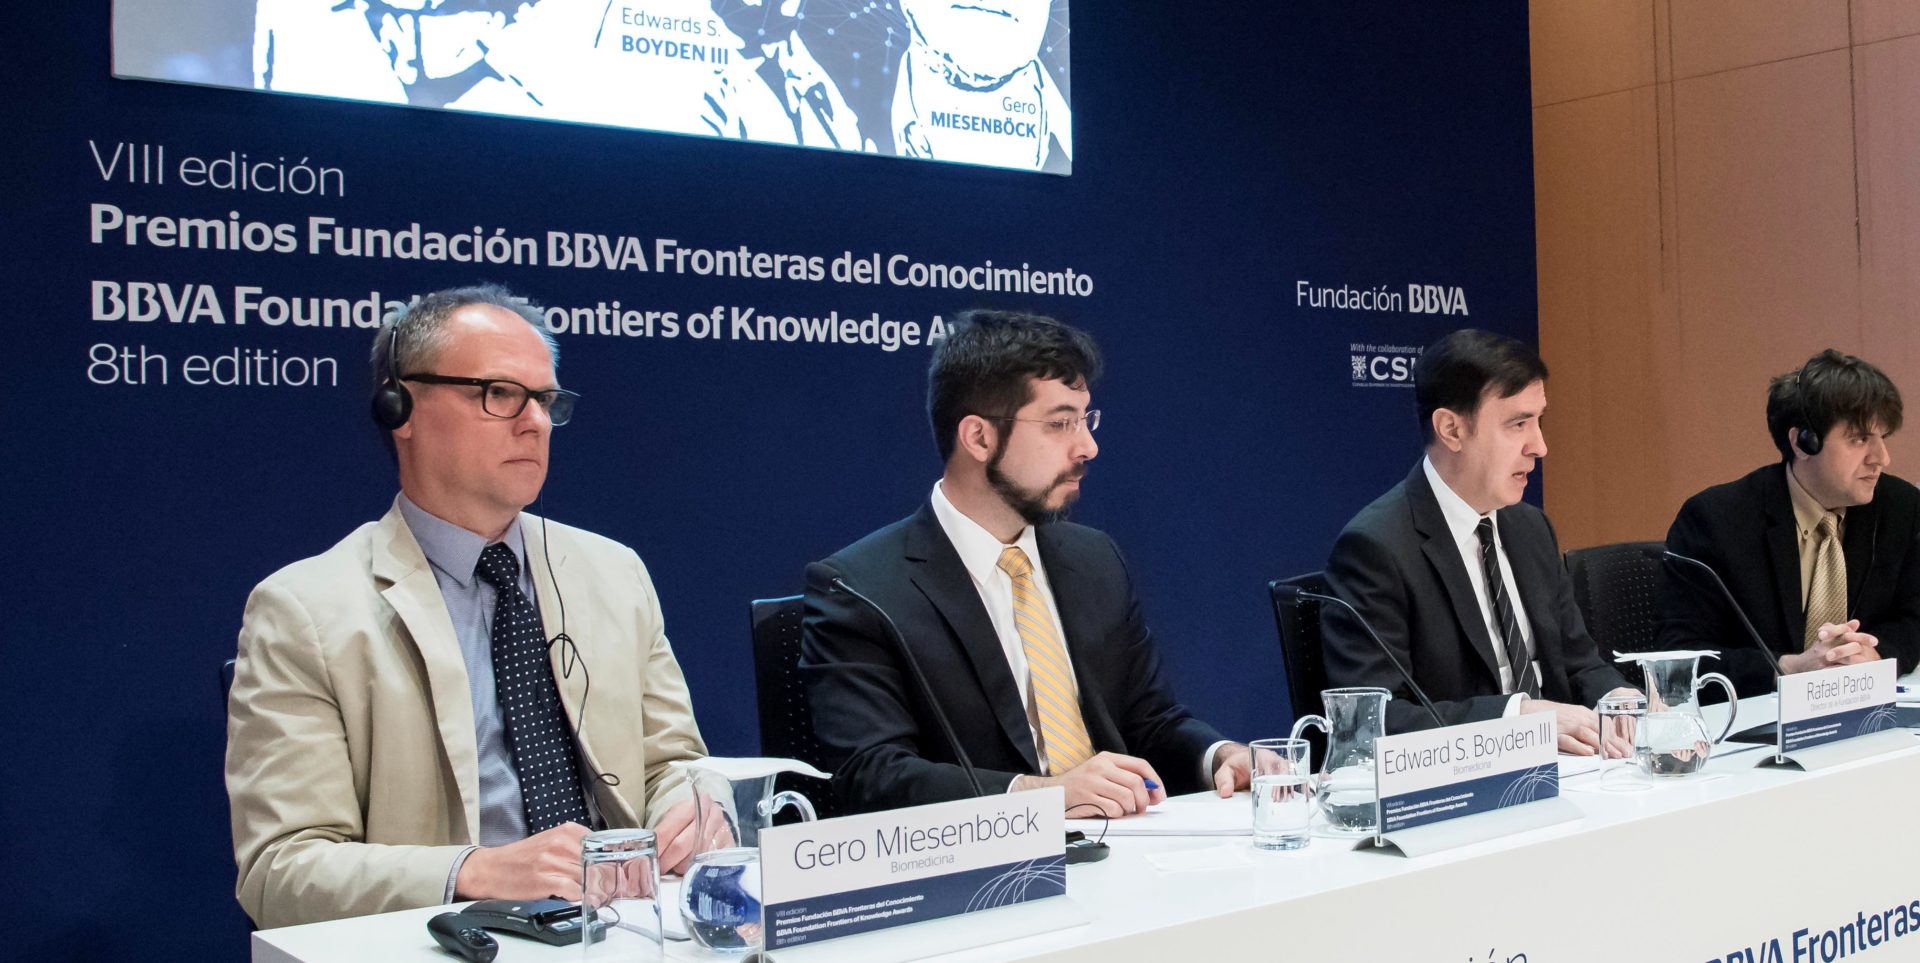 Fotografía de Deisseroth, Boyden y Miesenböck, premios fronteras del conocimiento de la fundación BBVA en biomedicina